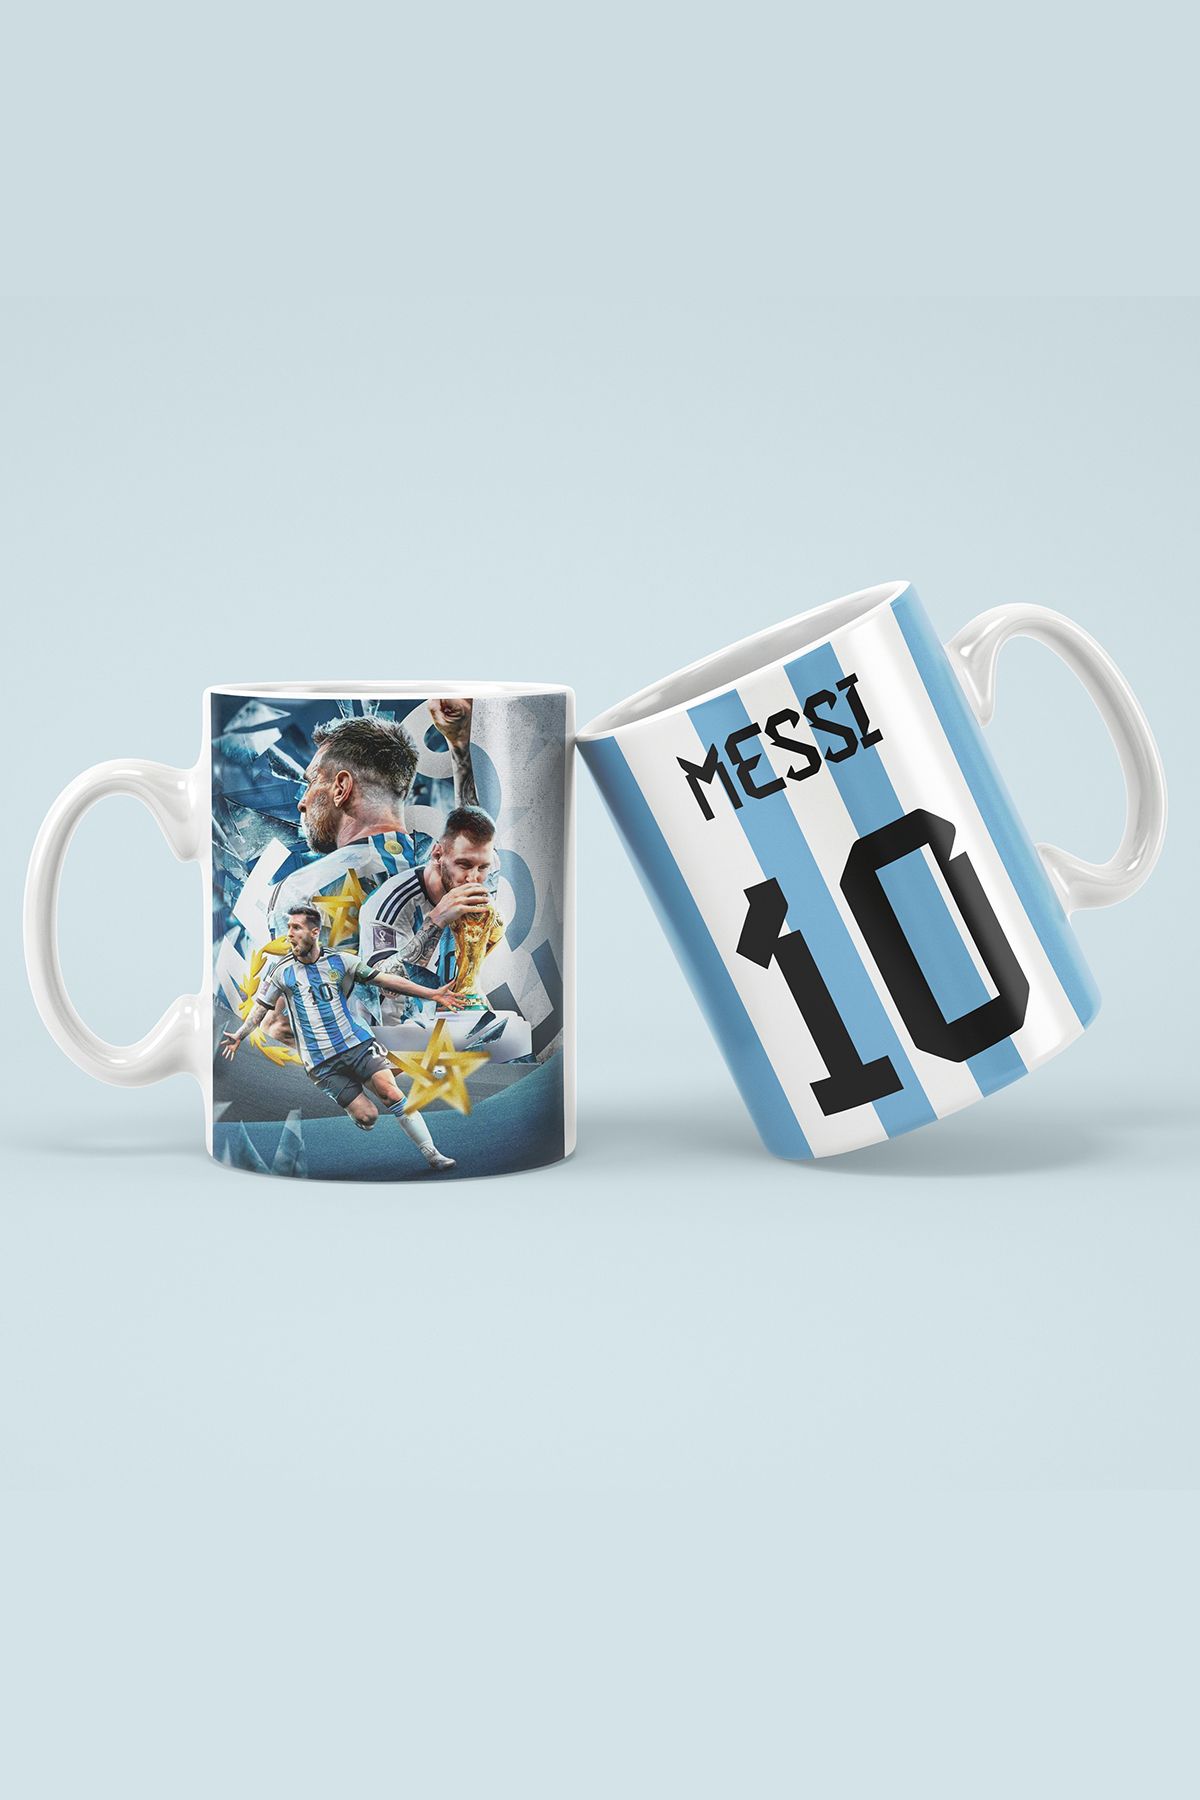 OYART&DESIGN Messi Dünya Kupası Baskılı Kupa Bardak Hediye Kutulu